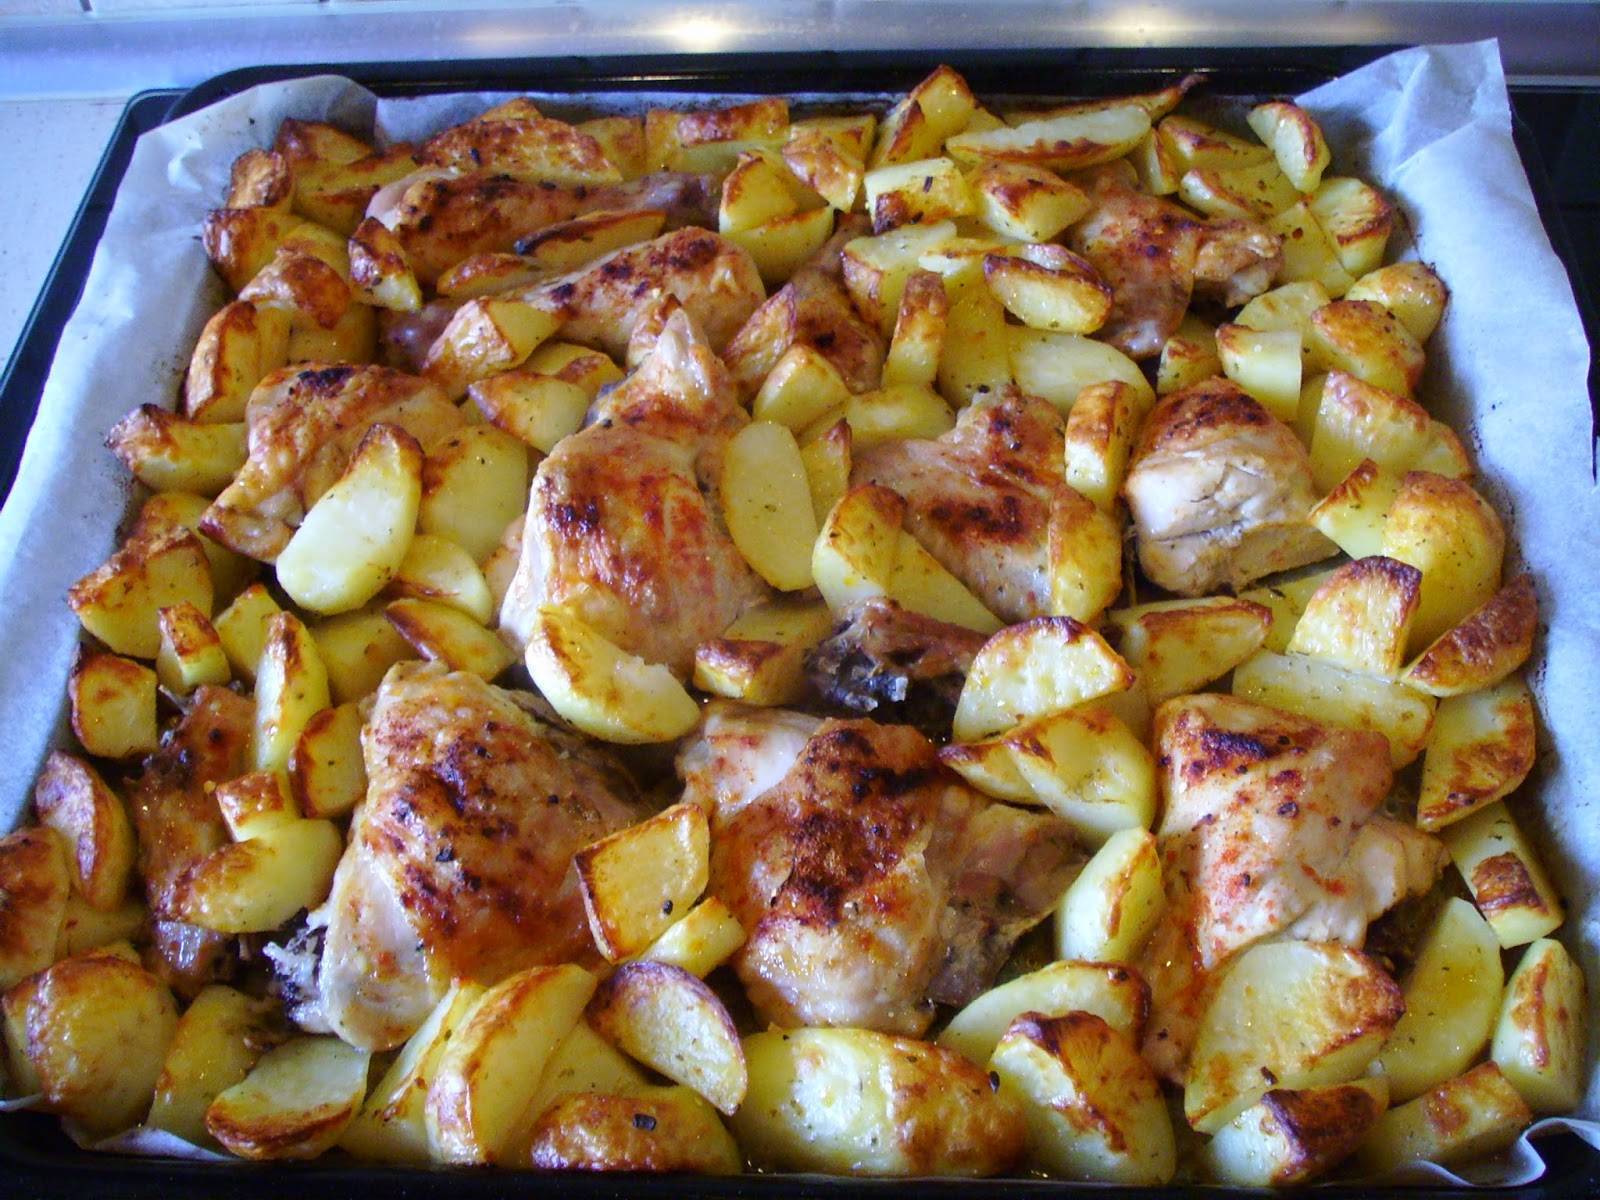 Картофель запеченный с мясом в духовке: простые и вкусные рецепты